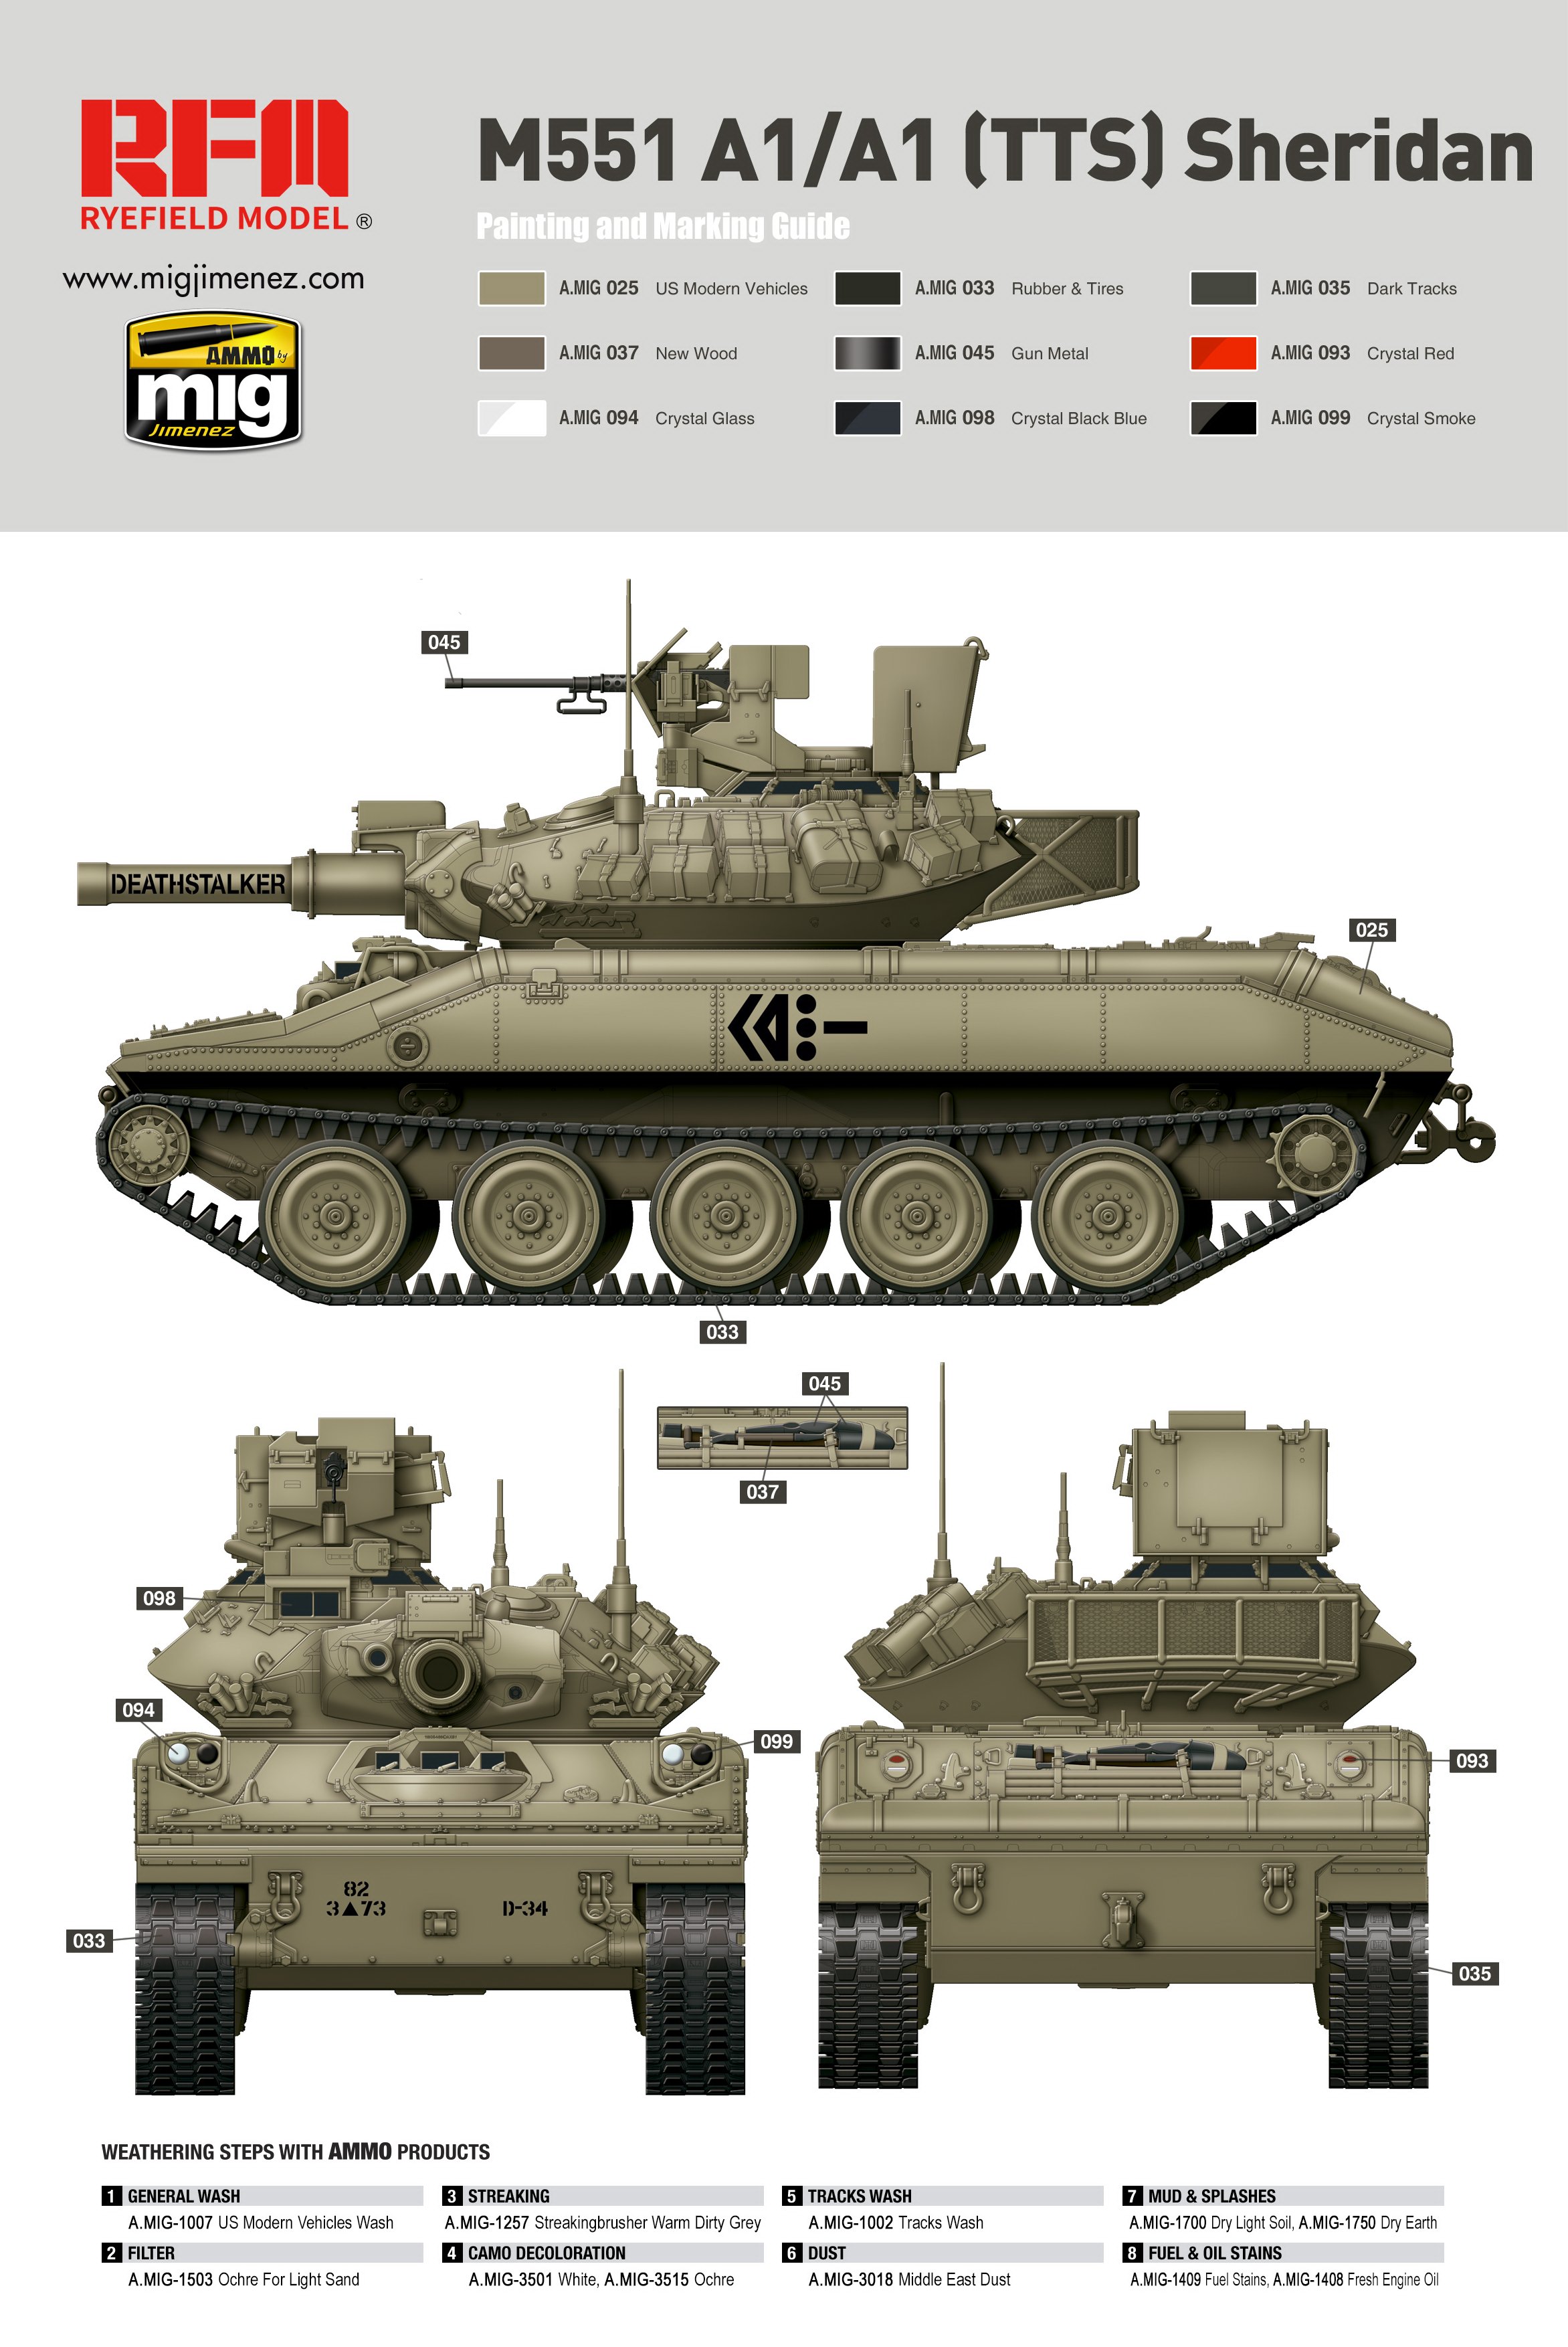 1/35 现代美国 M551A1/M551A1 TTS 谢里登轻型坦克 - 点击图像关闭